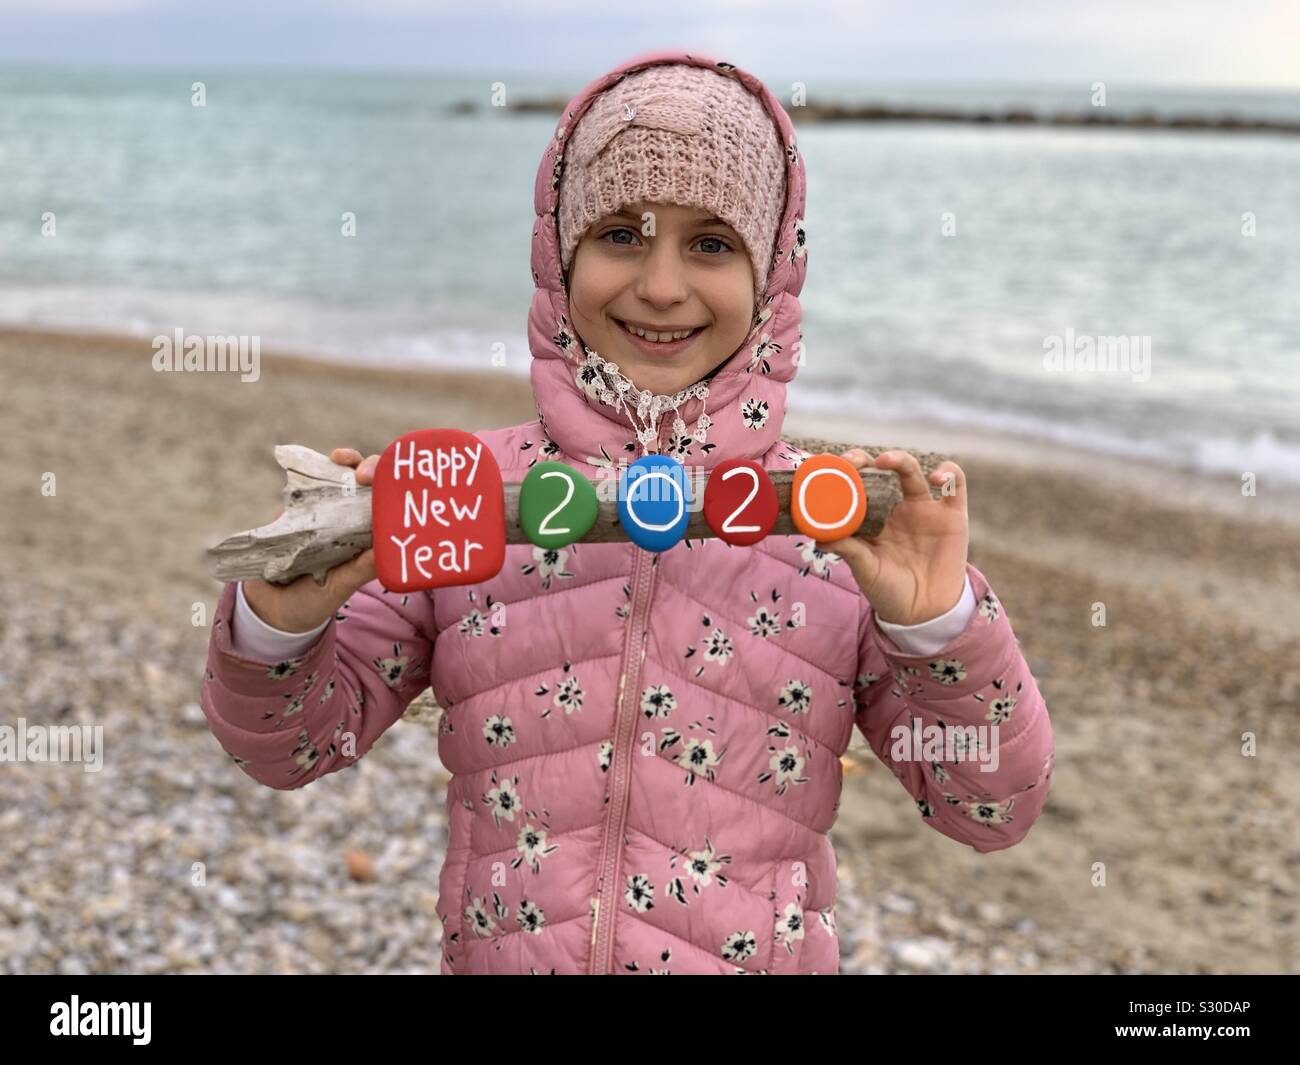 Felice Anno Nuovo 2020 con un bambino tenendo un creative pietre colorate di composizione presso la spiaggia Foto Stock